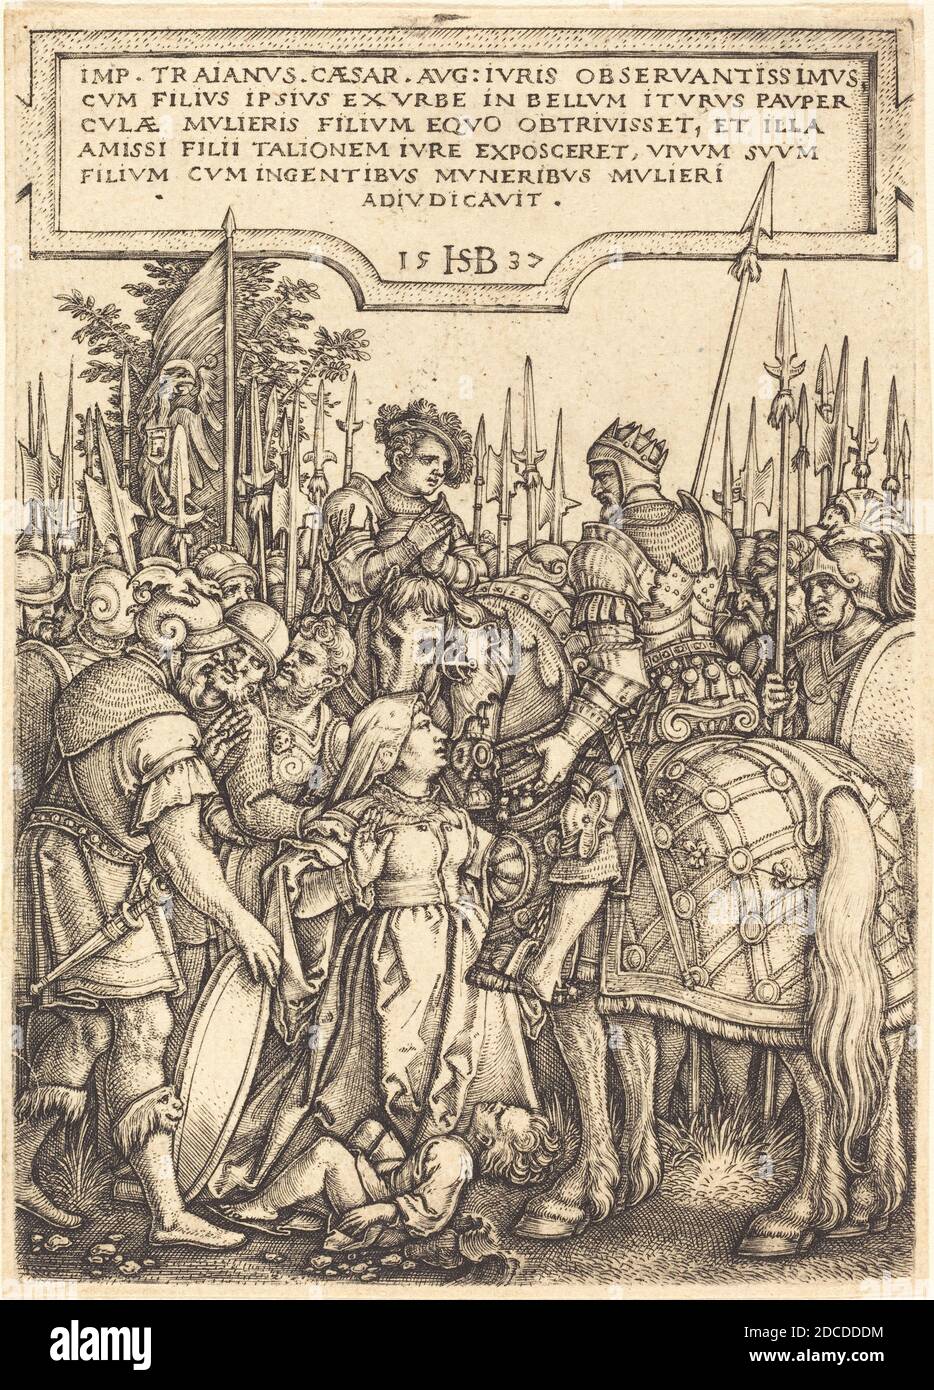 Sebald Beham, (Künstler), deutsch, 1500 - 1550, das Urteil von Trajan, 1537, Gravur Stockfoto